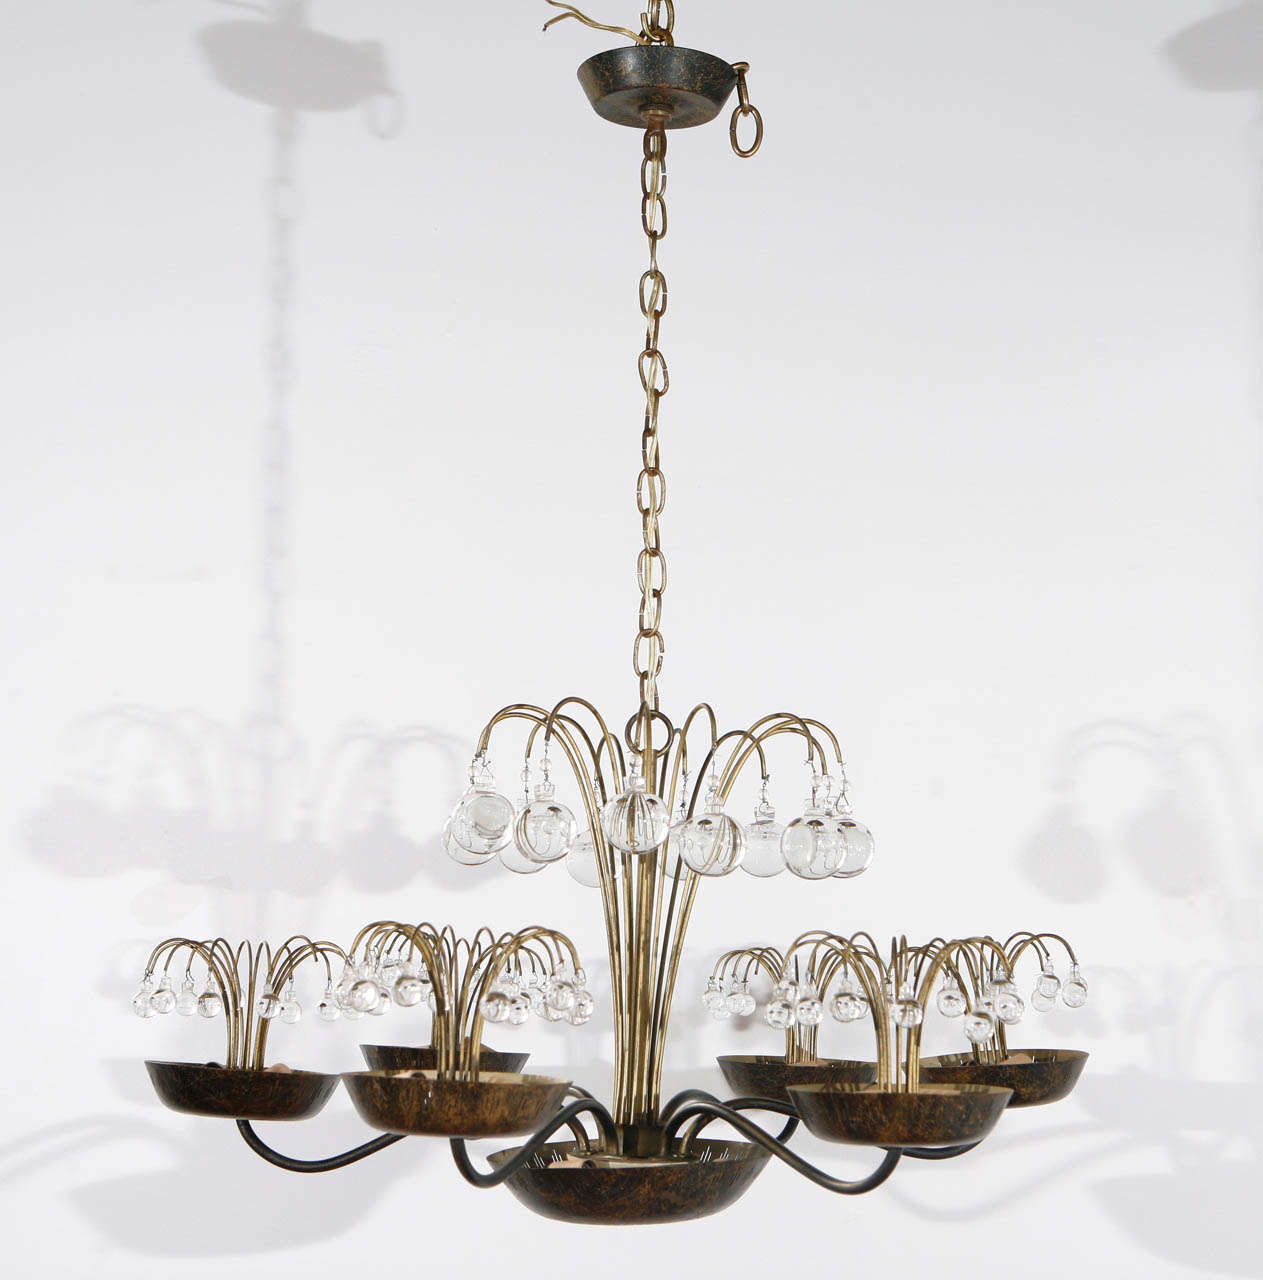 Delicate chandelier; 15 candelabra sockets each take a 60 watt bulb.